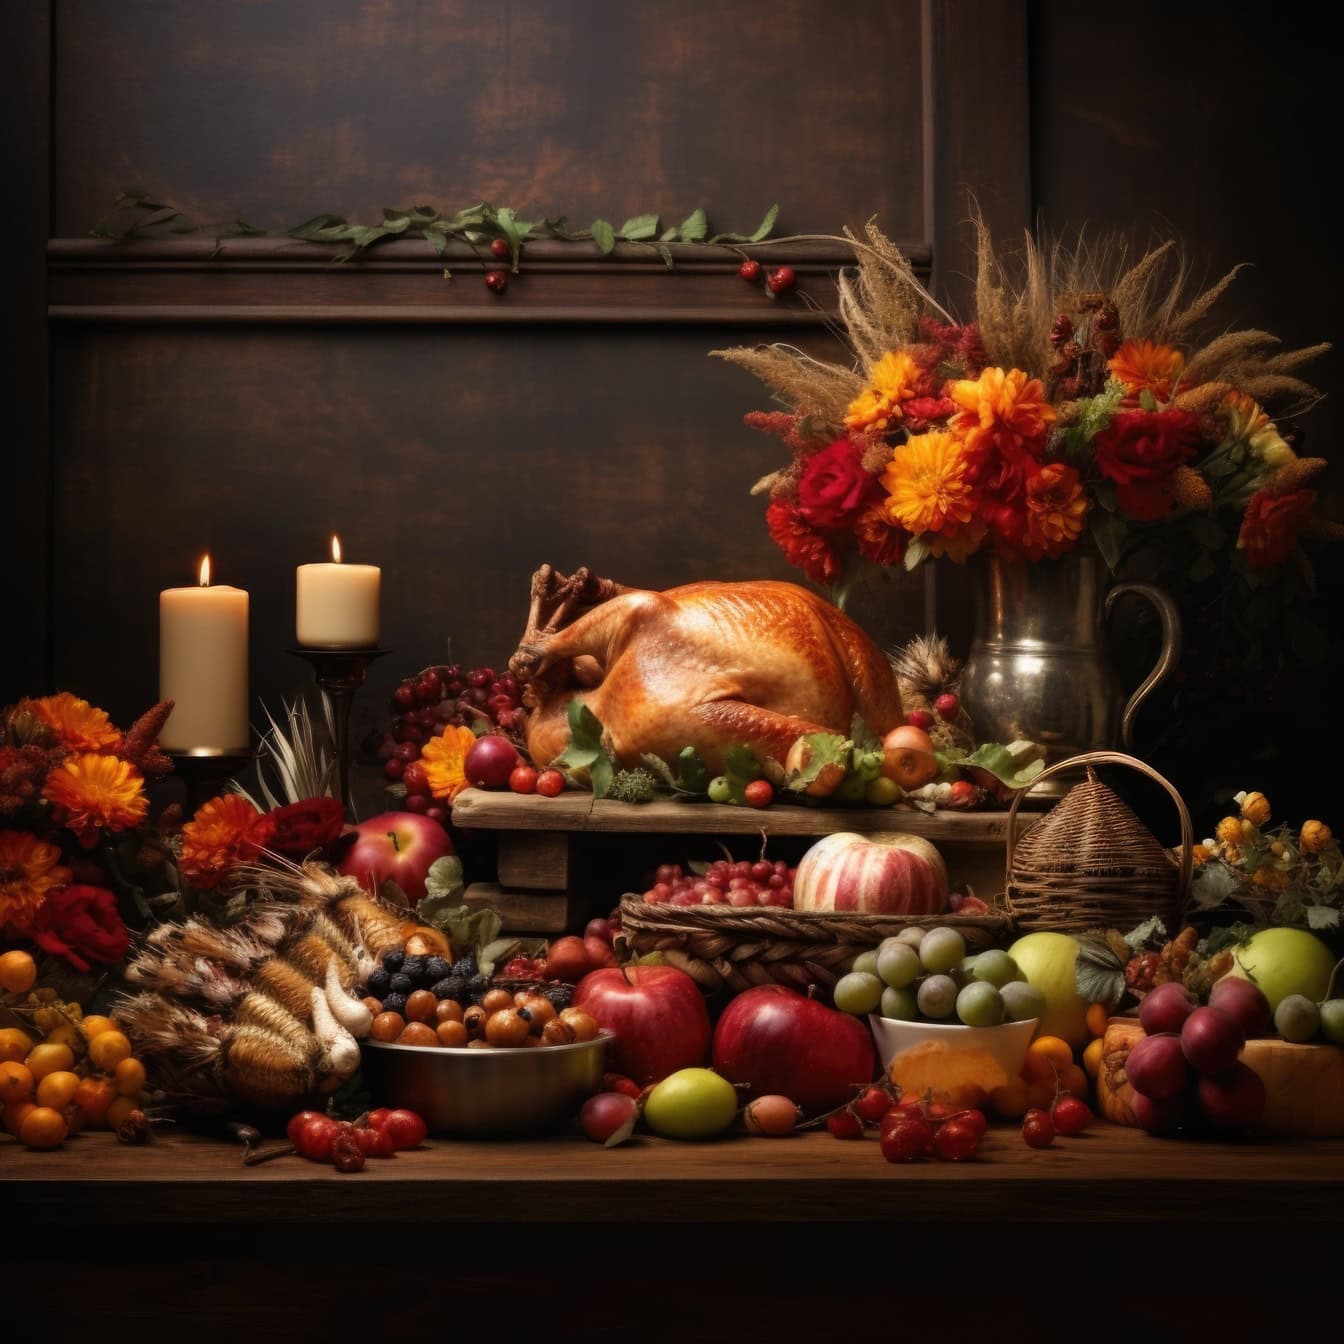 Thanksgiving middagsbord med ristet kalkun og forskellige frugter og blomster i vase, en ideel stillebenkomposition skabelon